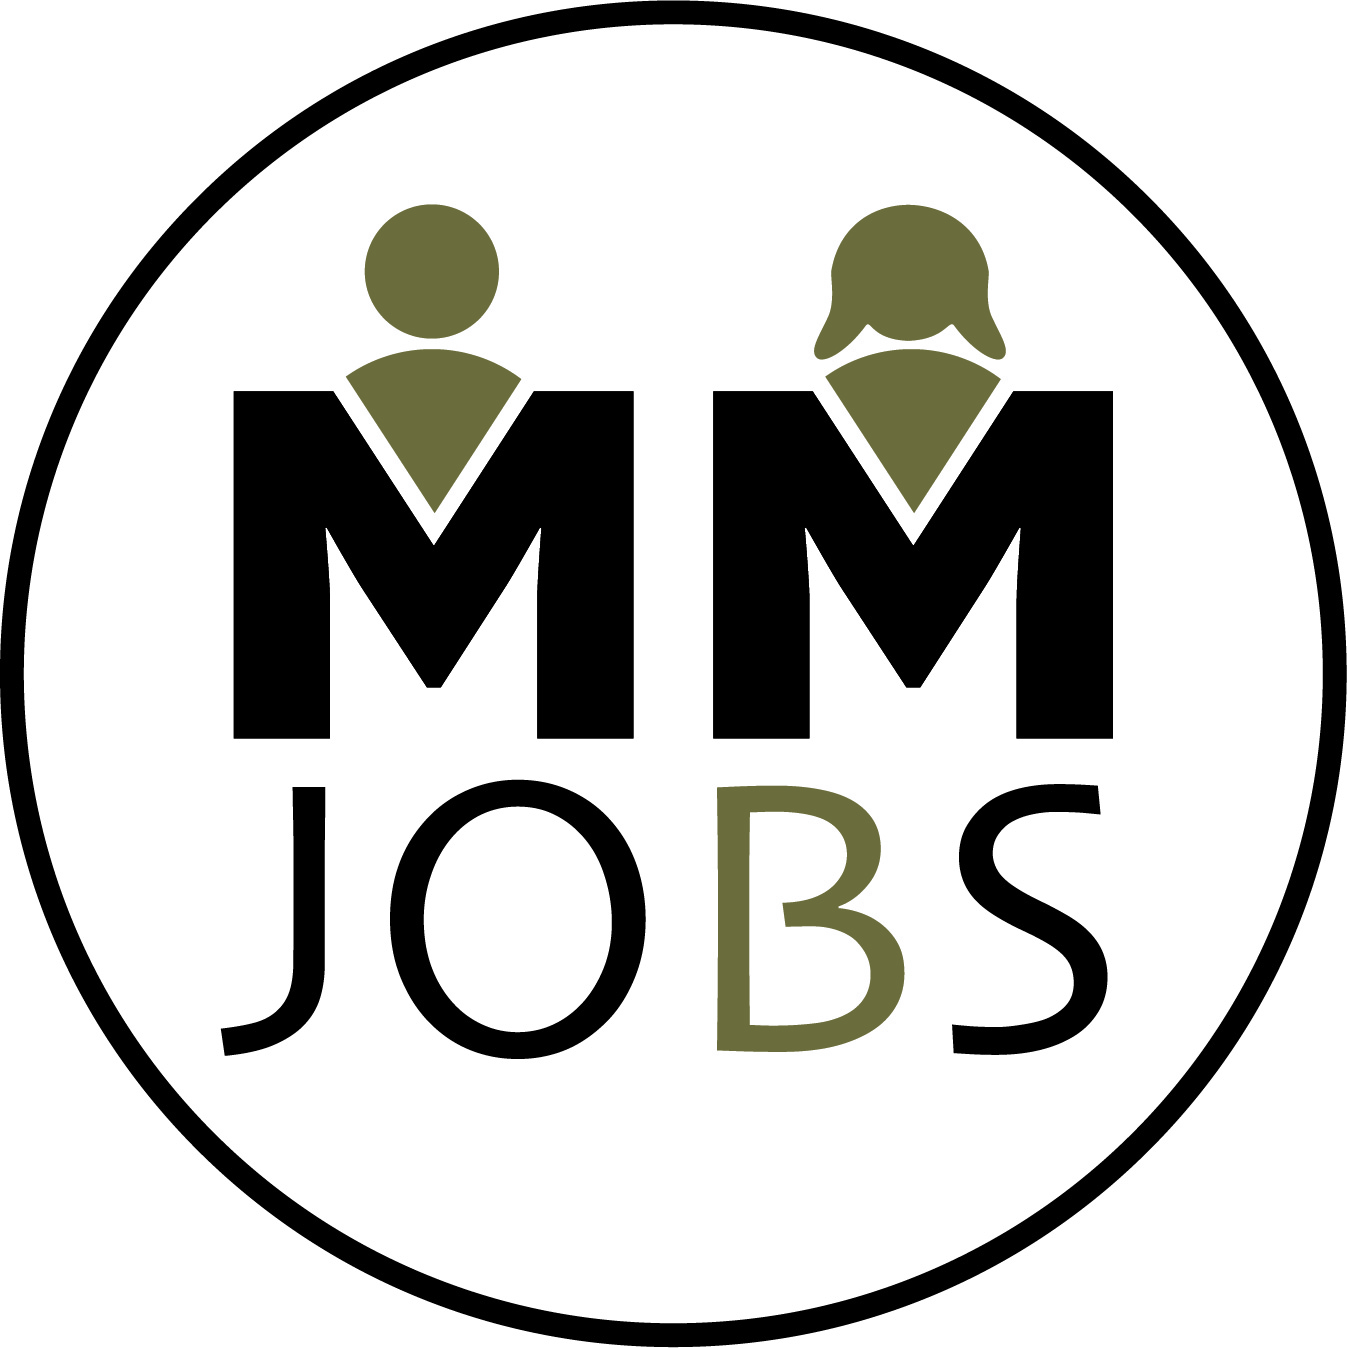 Personálna agentúra MM Jobs s.r.o. je sprostredkovateľom práce v hotelierstve a gastronómii v rakúskych spolkových krajinách. - MM Jobs s.r.o.